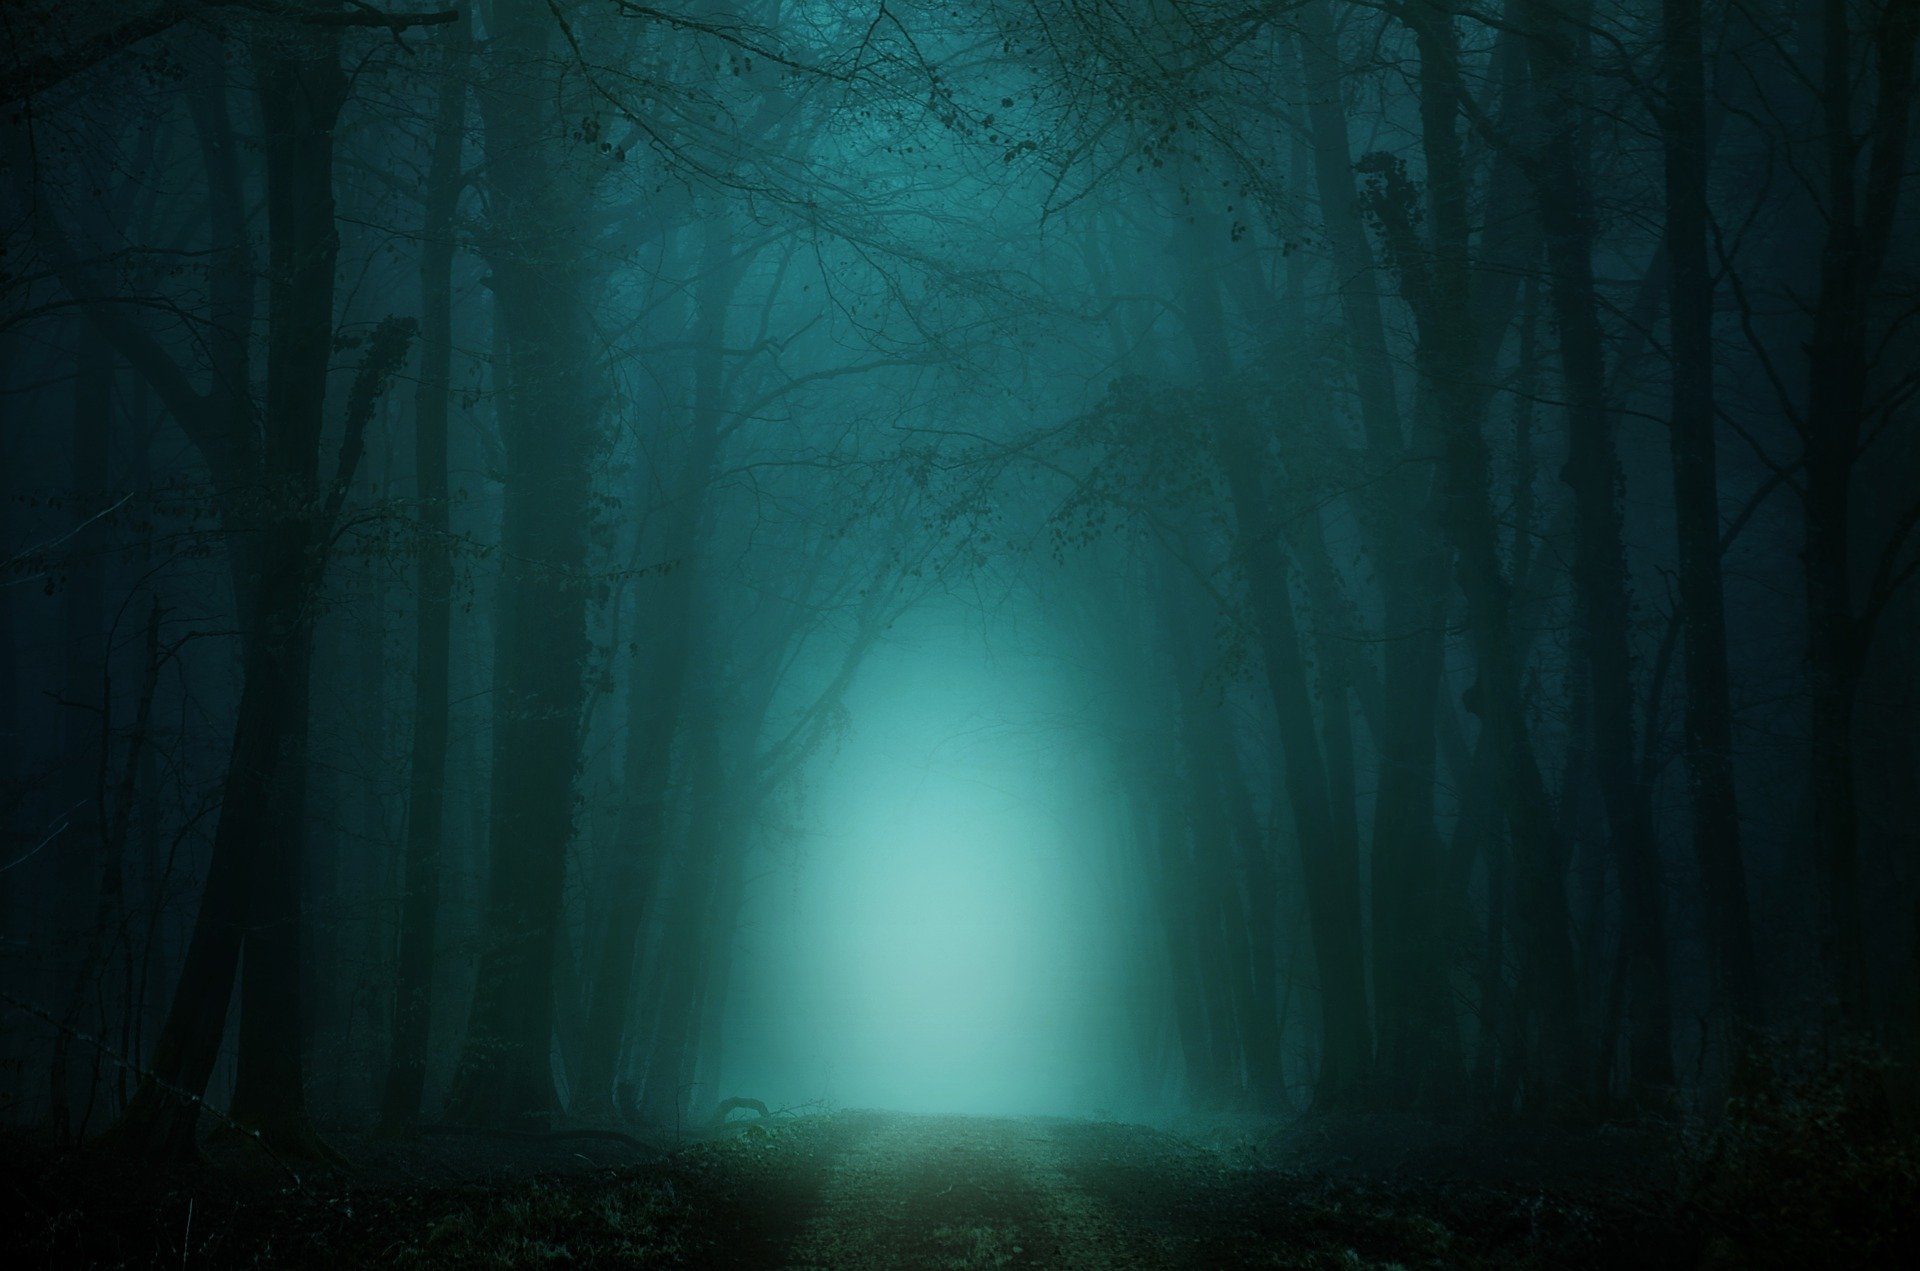 Wald dunkel (c) Bild von DarkmoonArt_de auf Pixabay